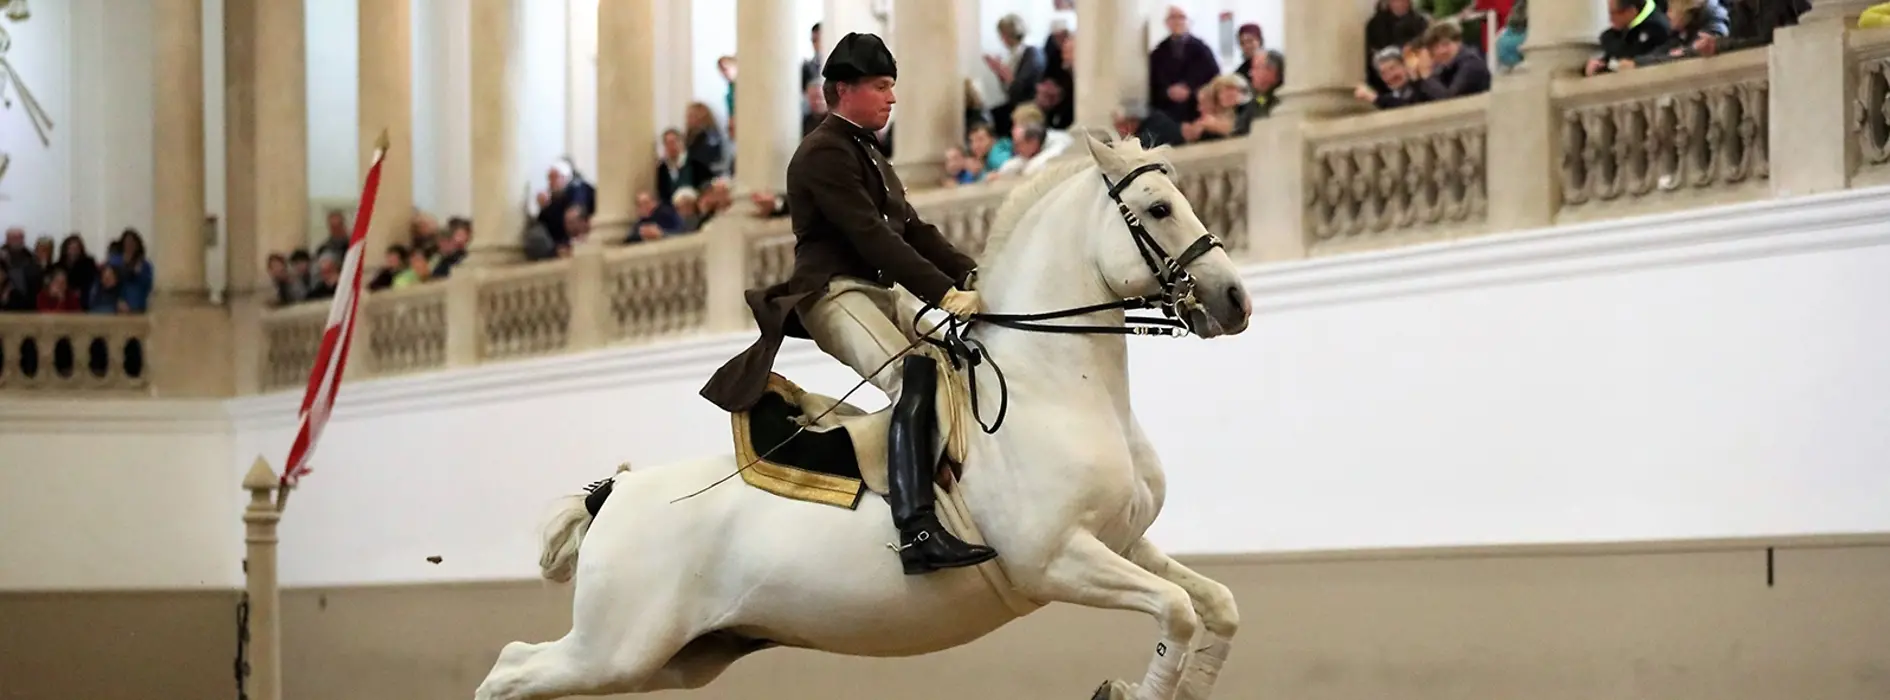 Scuola di Equitazione spagnola, lipizzani, cavaliere durante un salto